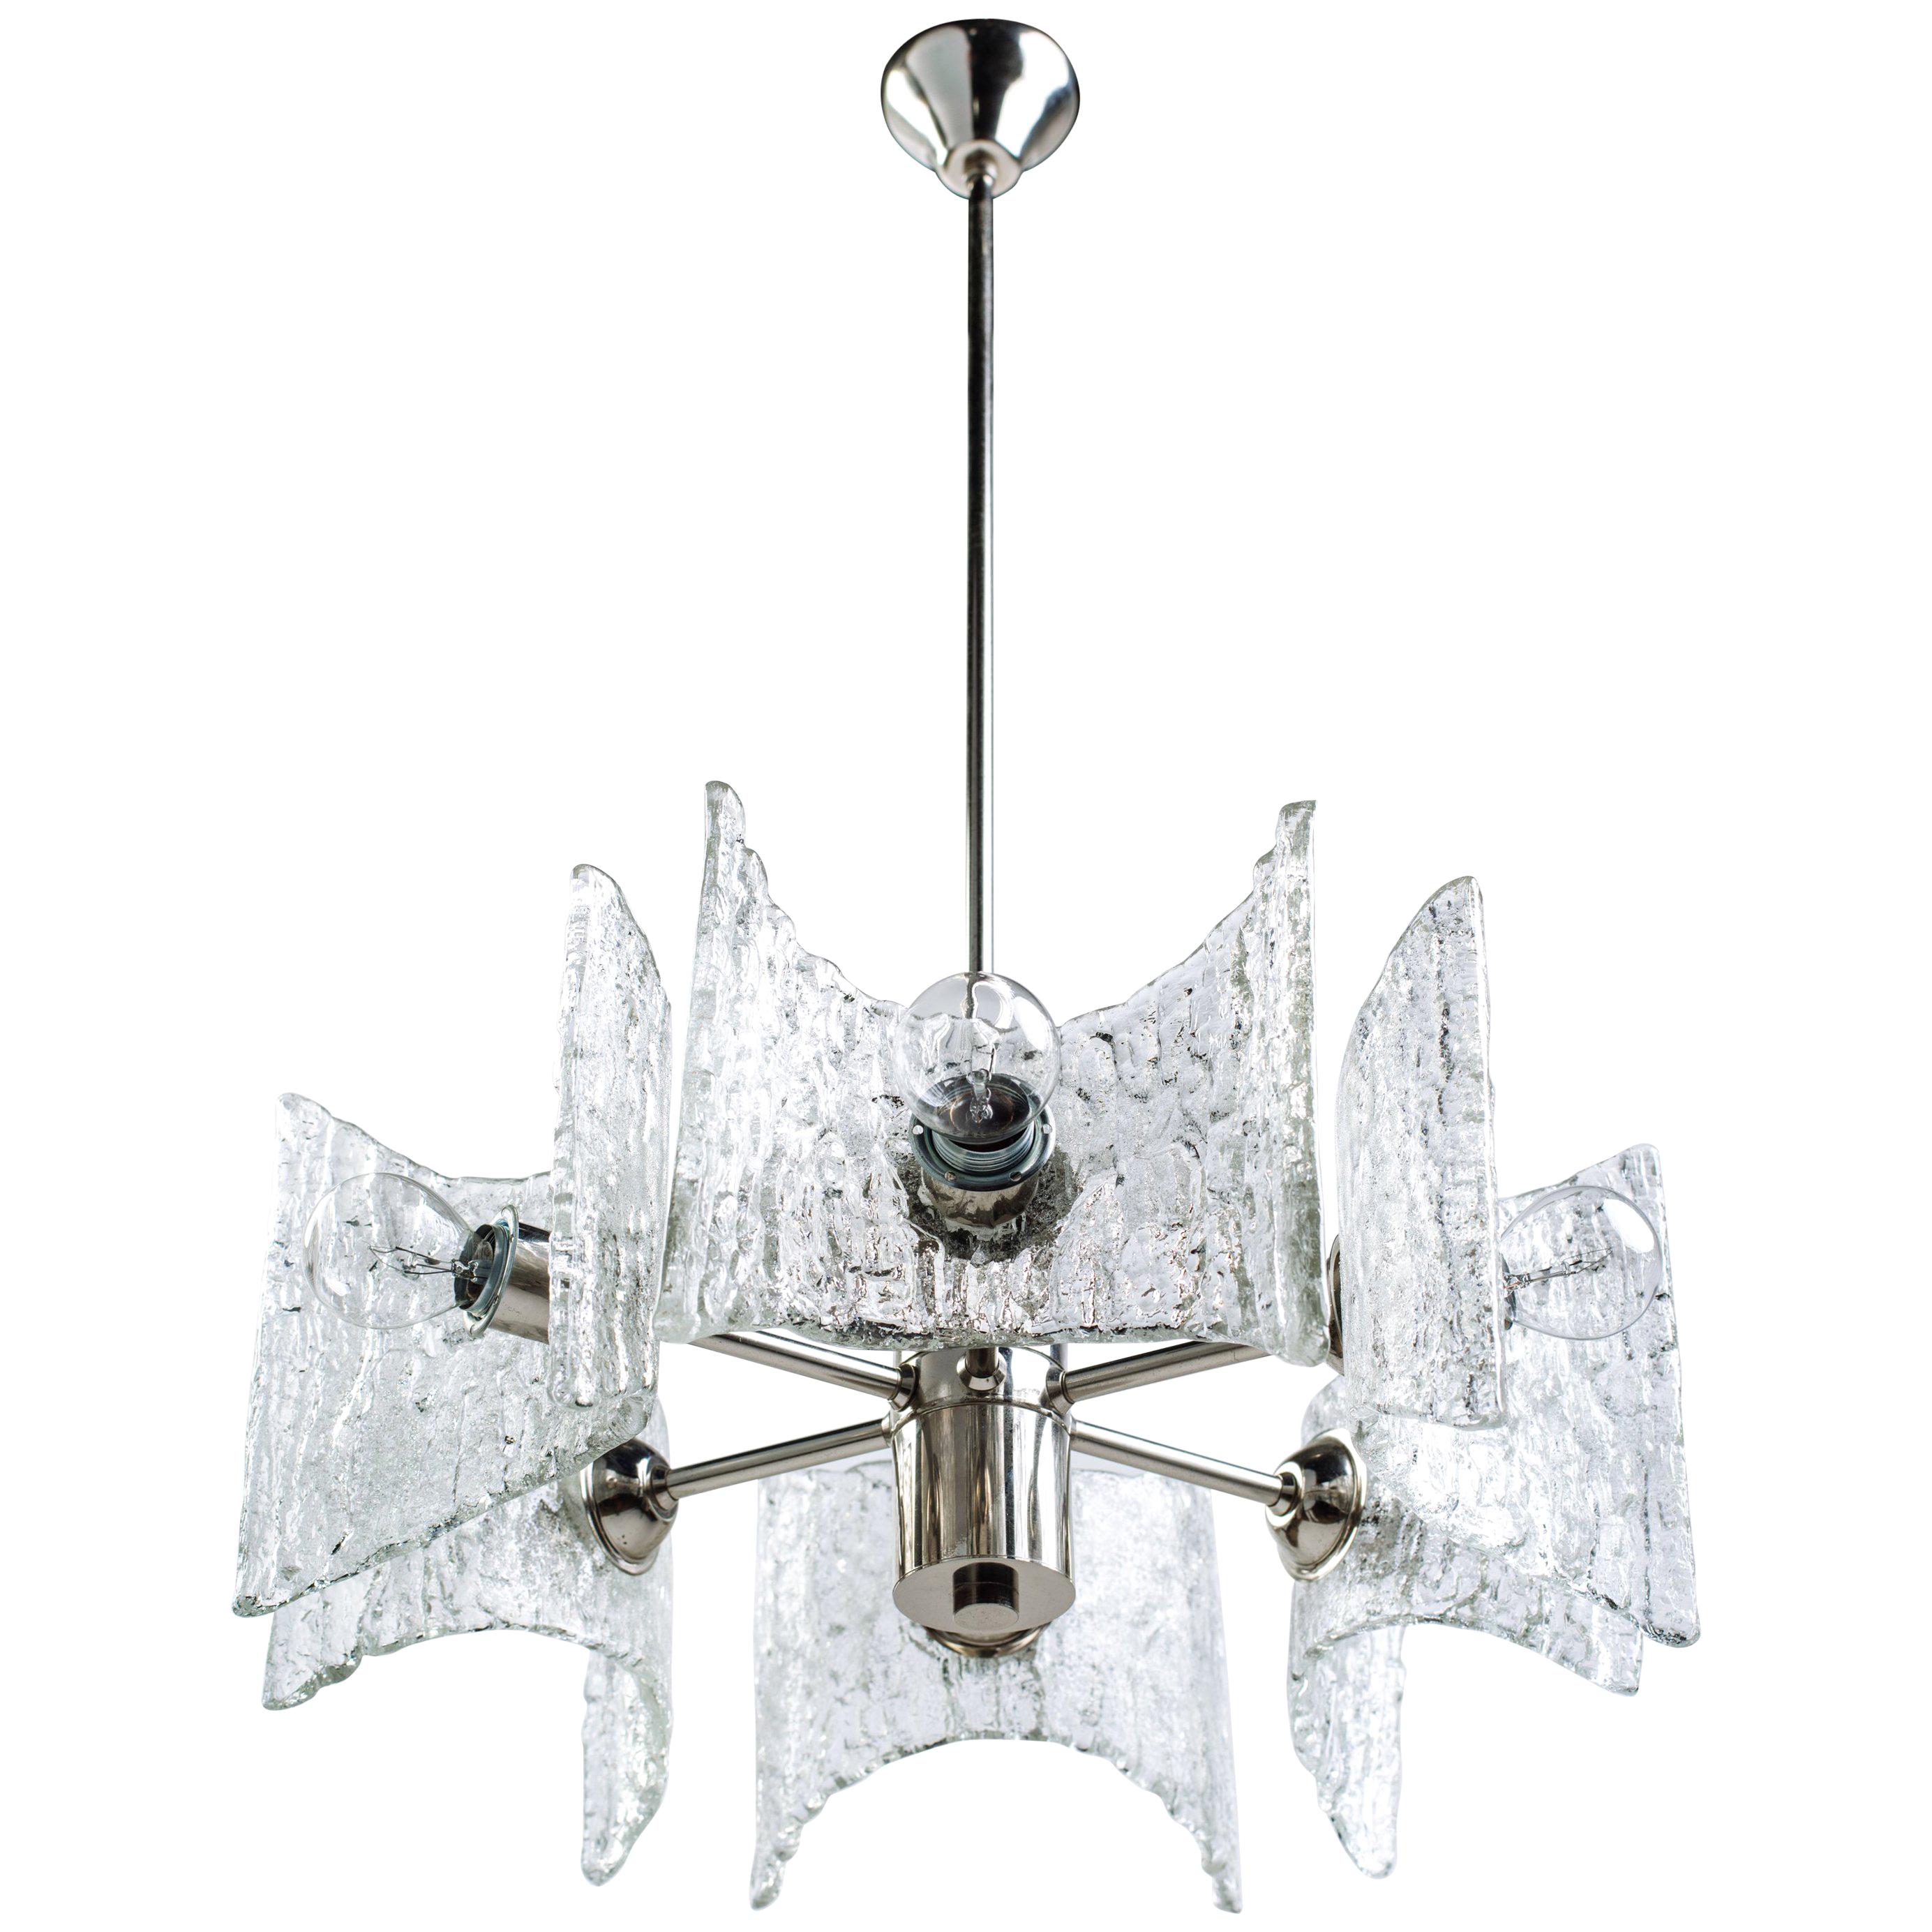 Mid-Century Modern Starburst Chandelier with Ice Glass Design by Kalmar